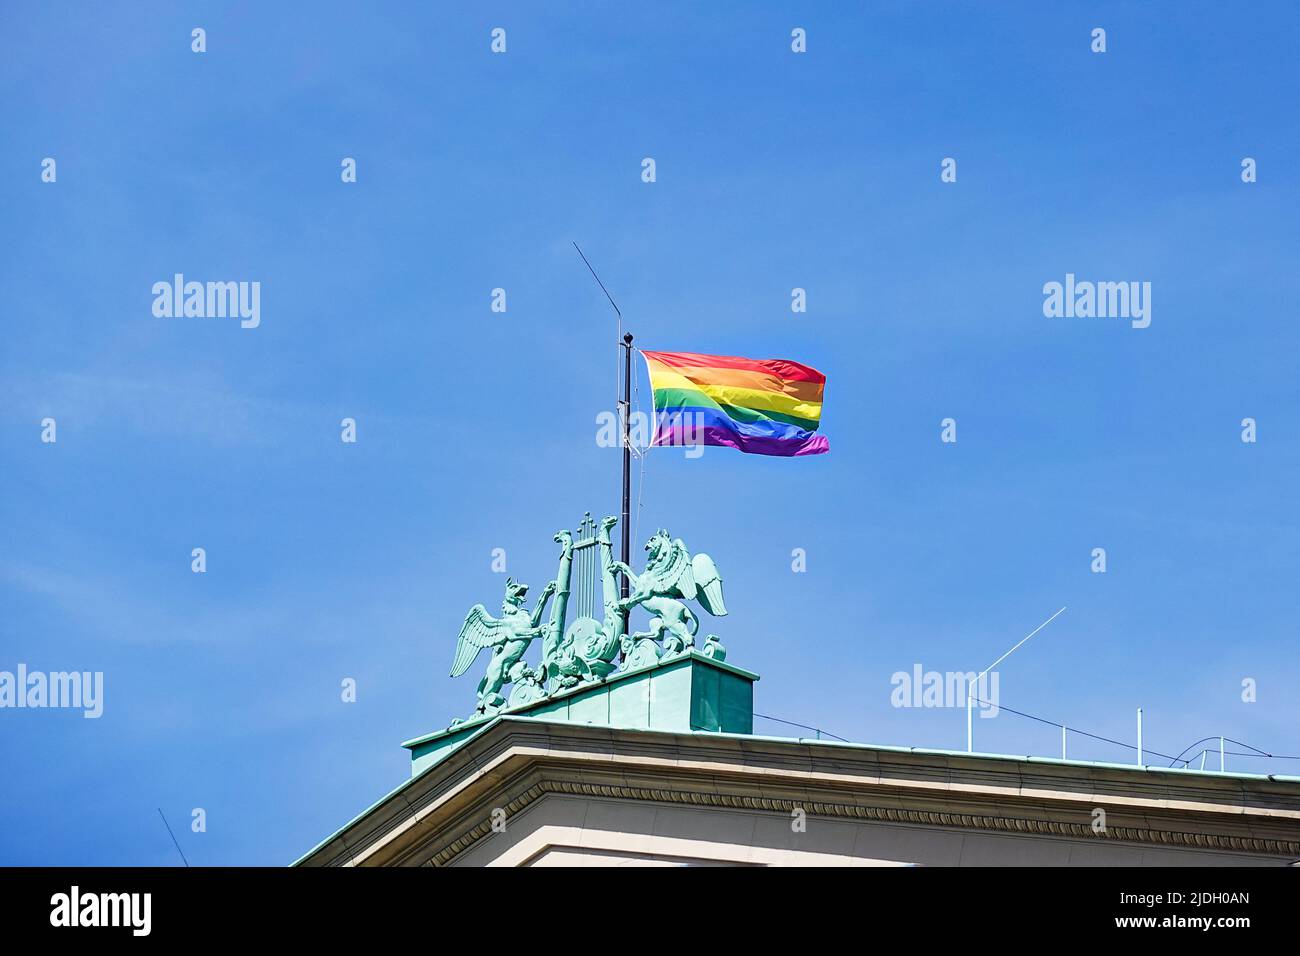 Bandera arco iris elevada en el techo de la ópera de Hannover durante el mes del orgullo Foto de stock